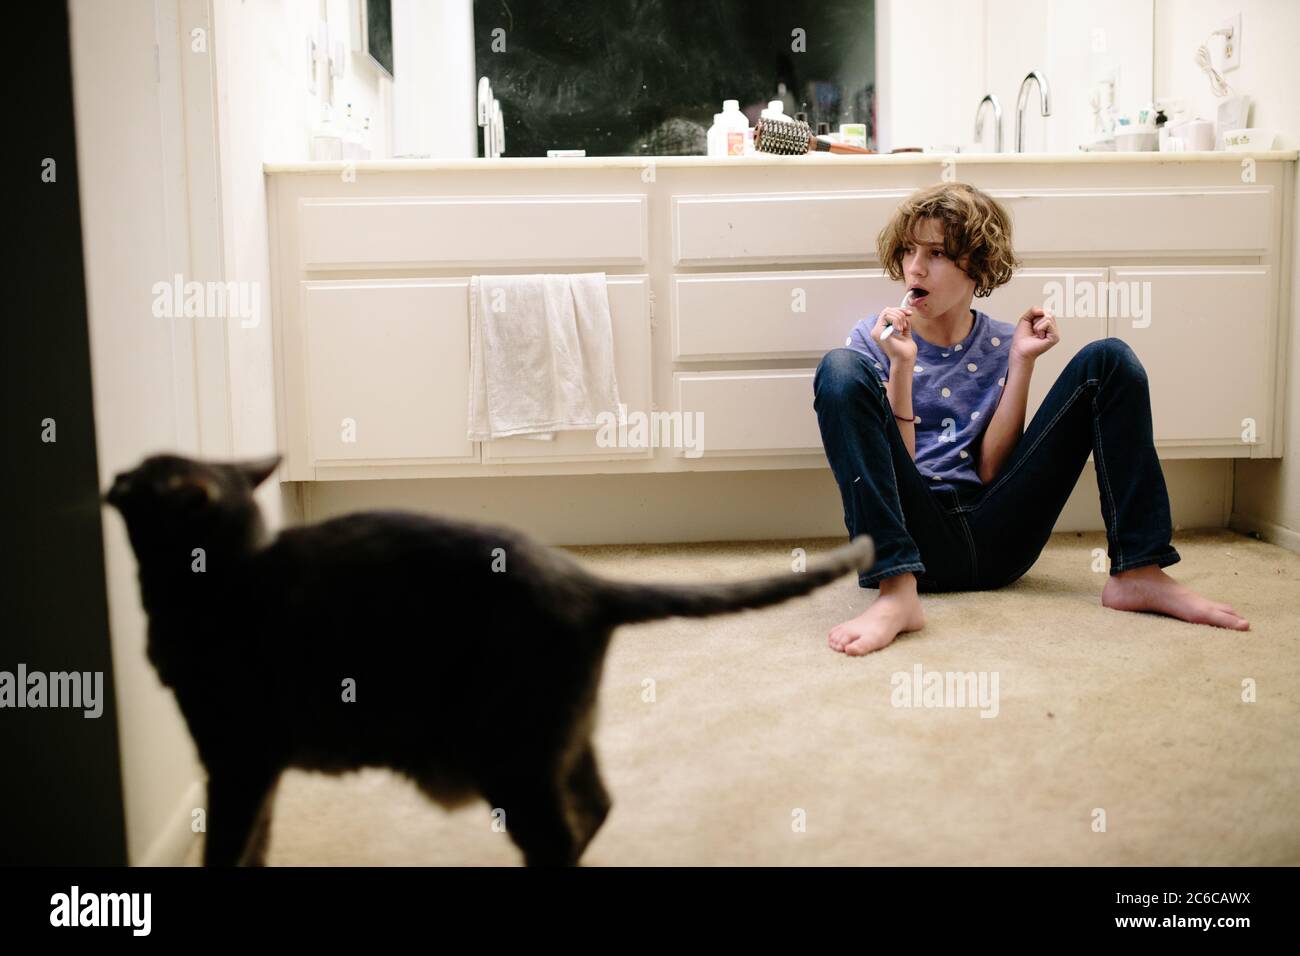 Une jeune fille est assise sur le sol tout en se brossant les dents avec cat à proximité Banque D'Images